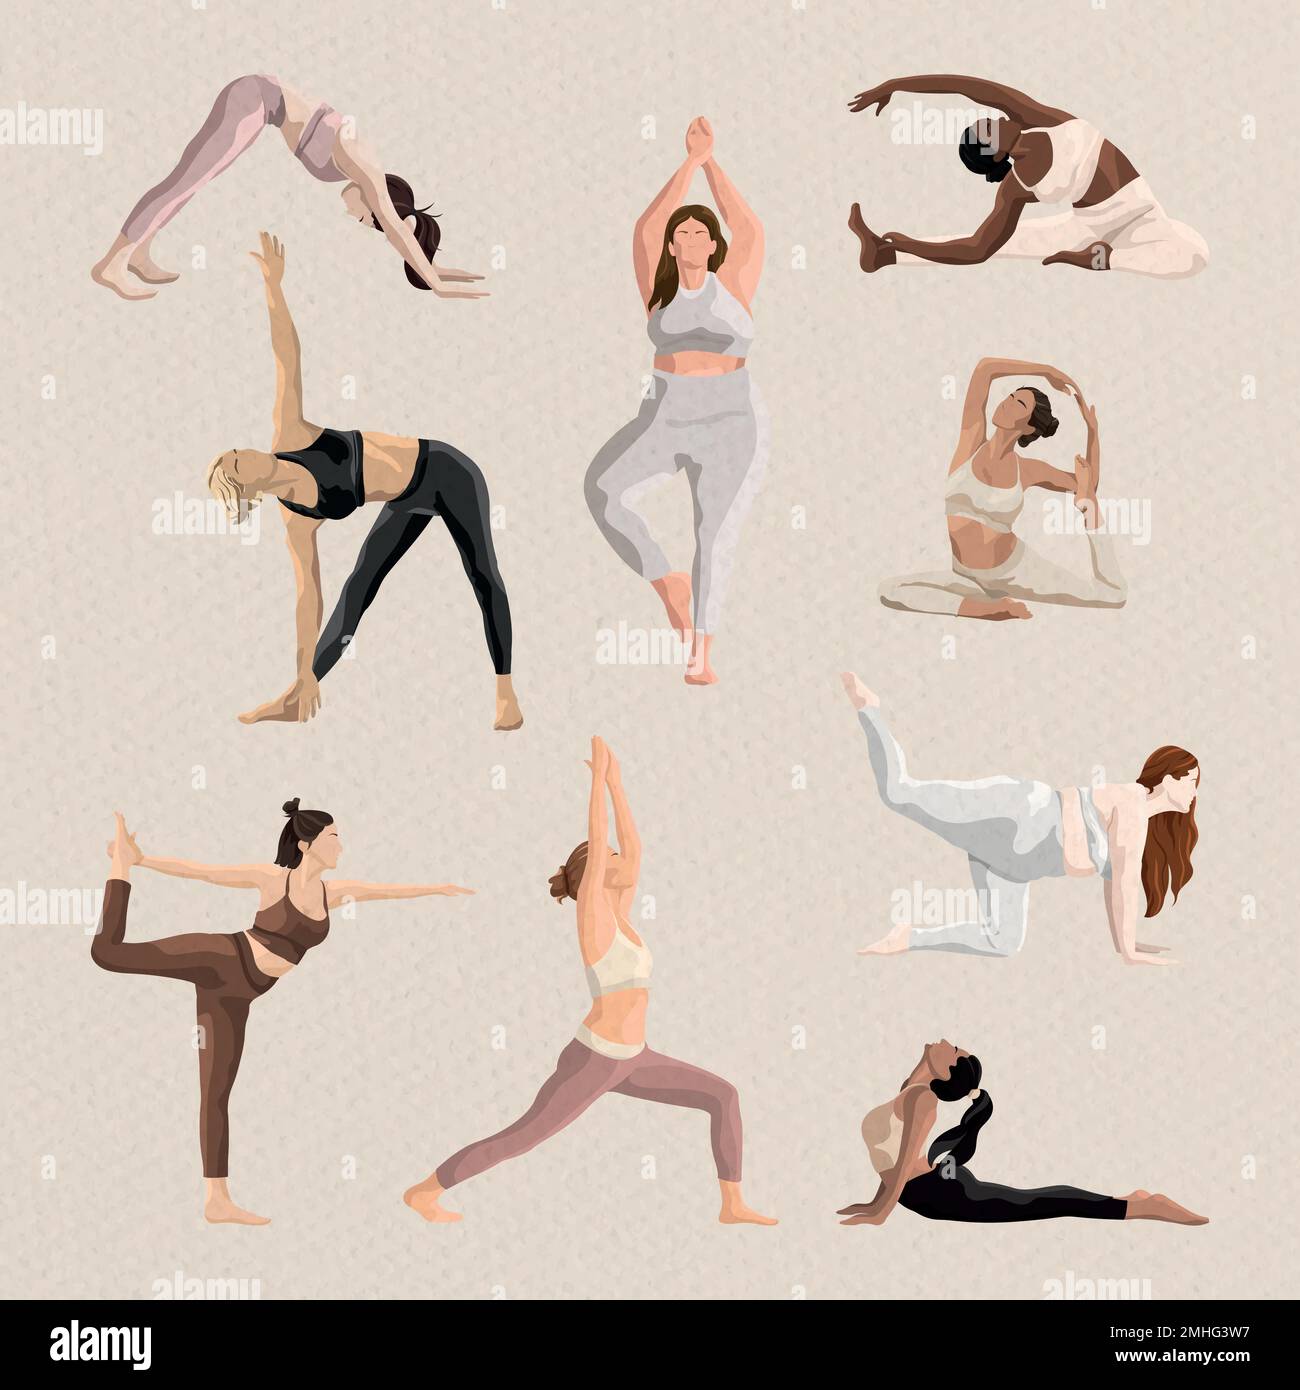 5 Easy Yoga Poses To Tone Your Body - Boldsky.com